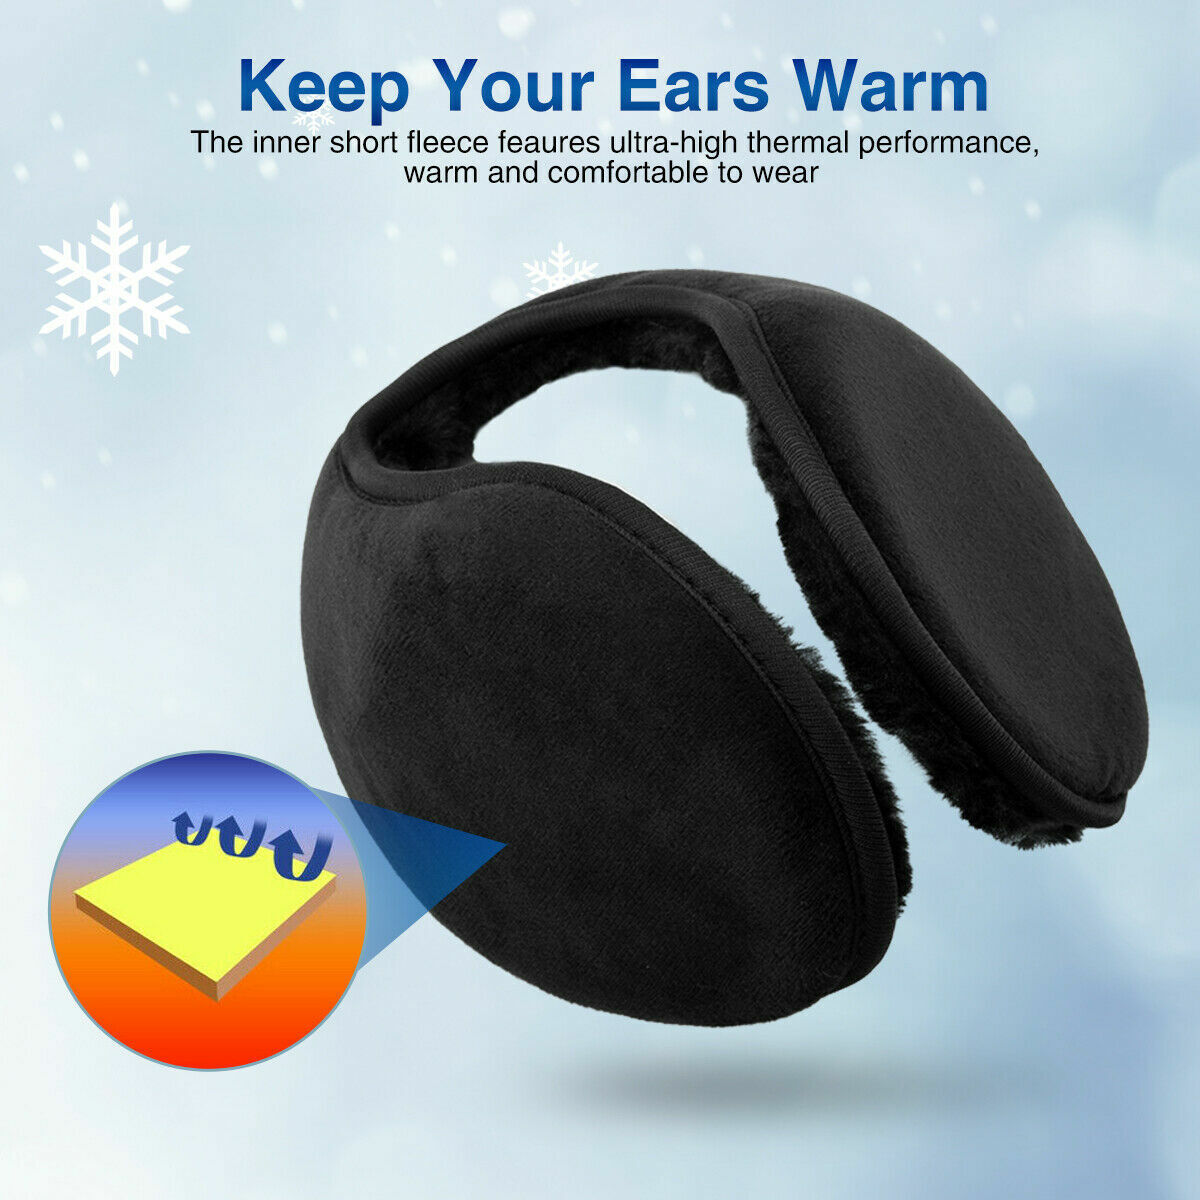 2 x Men Women Ear Muffs Winter Ear warmers Fleece Earwarmer Behind the Head Band Unbranded Does not apply - фотография #4